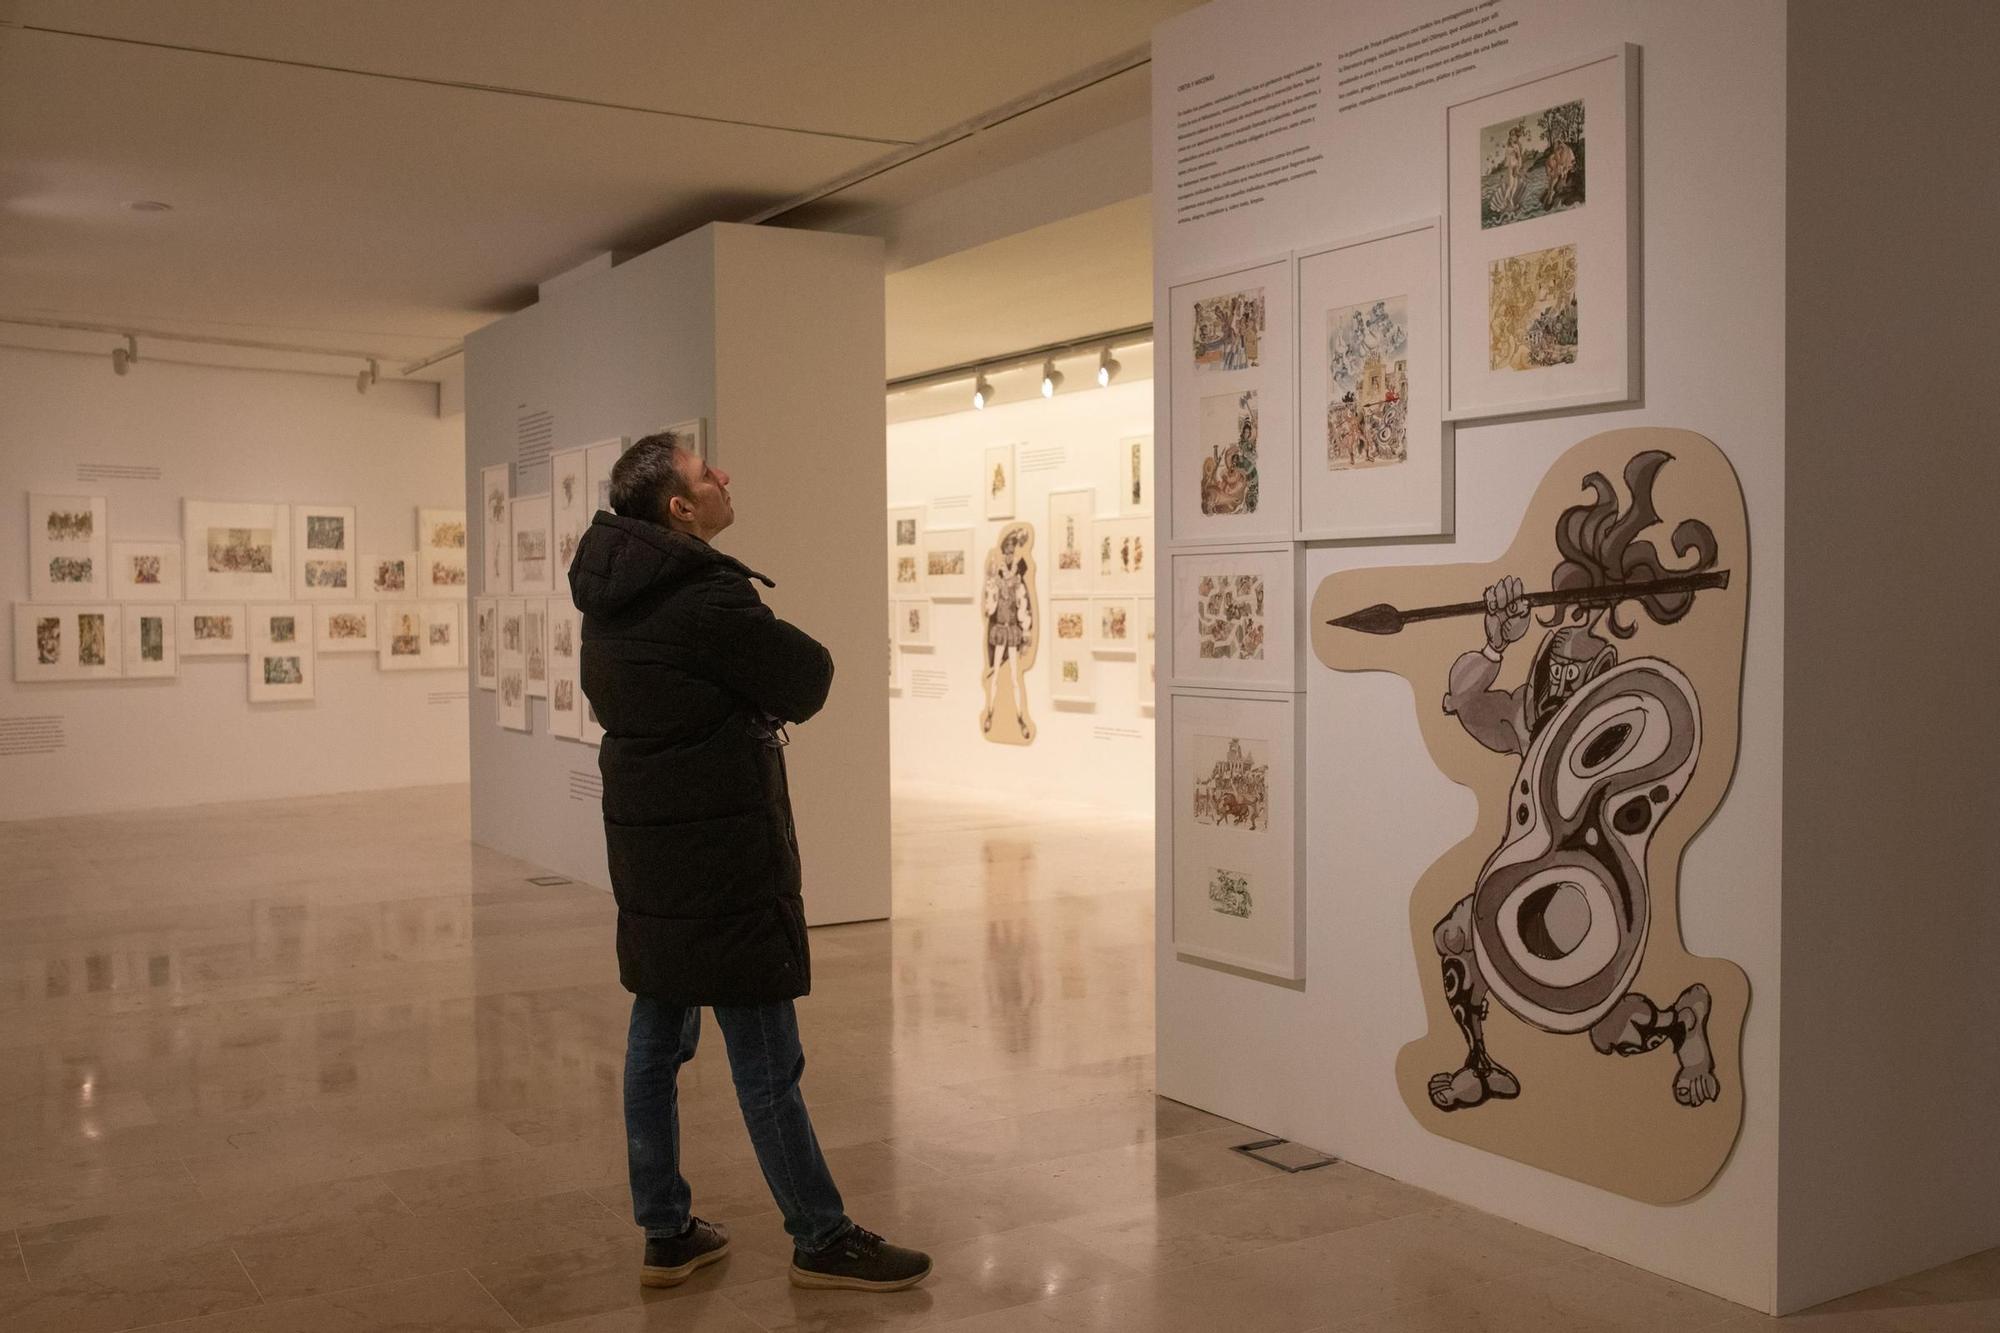 GALERÍA | Así es la exposición "Mingote (Breve) historia de la gente" del Etnográfico de Zamora